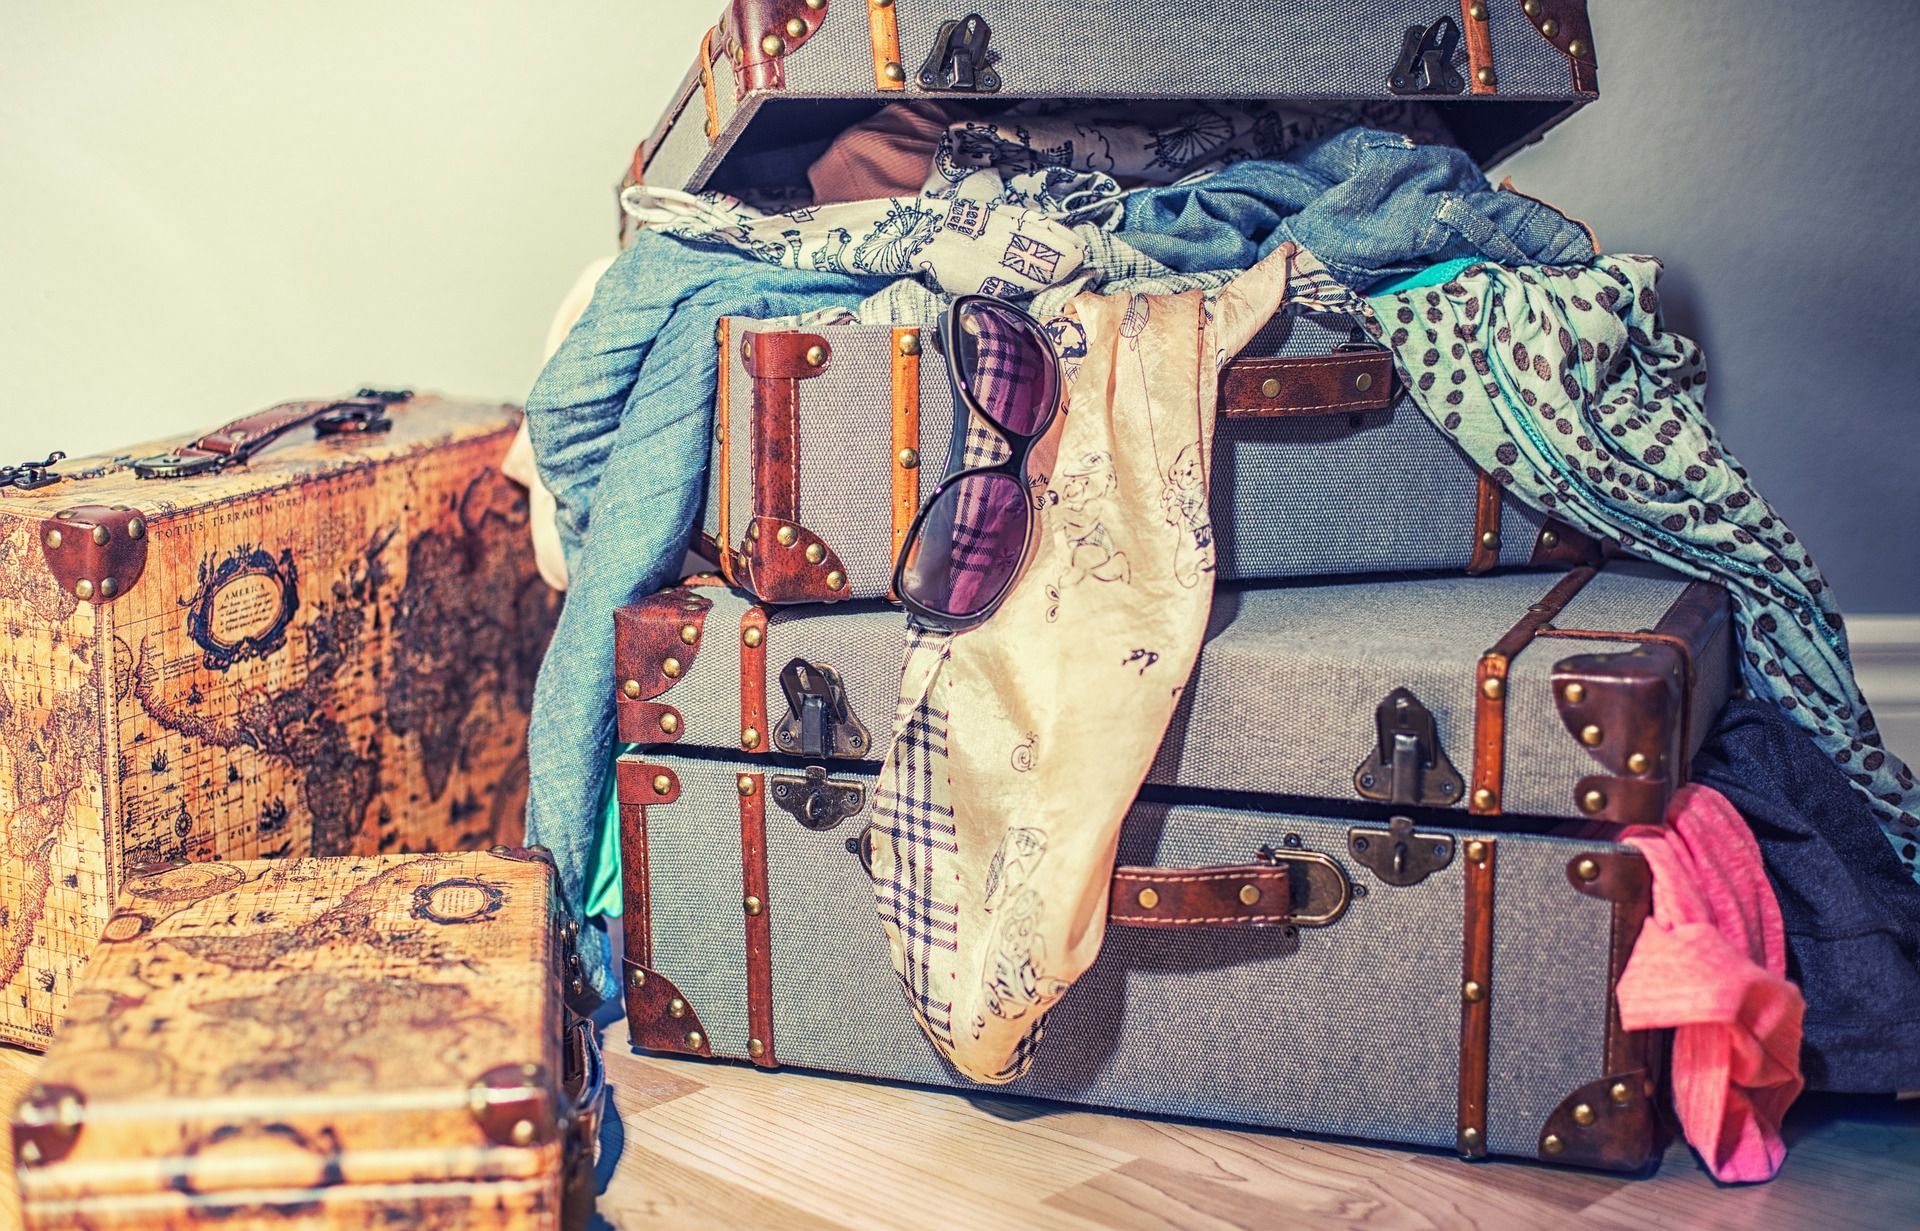 Что взять с собой на зимний отдых: составляем чемодан вместе
